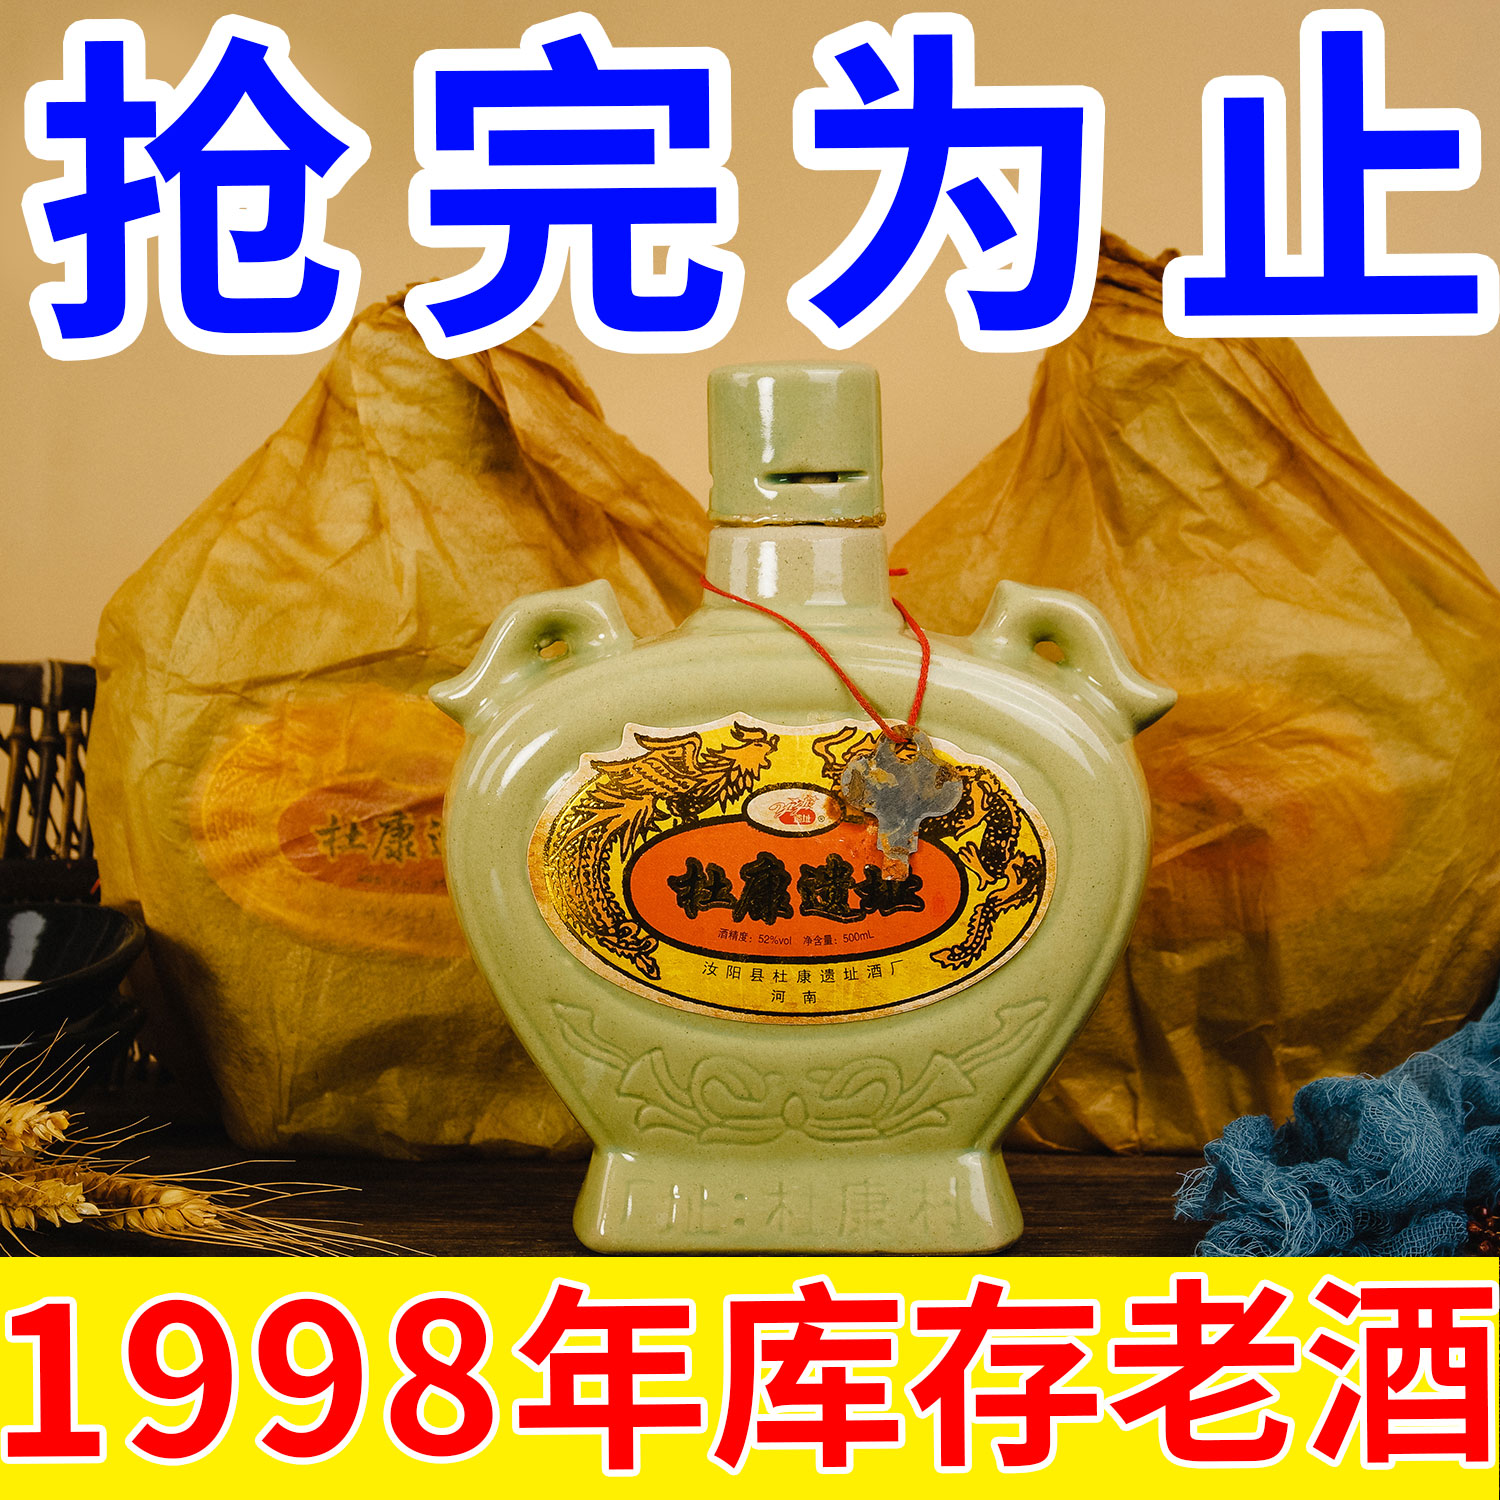 杜康遗址库存老酒陈酒1998年正品52度浓香型汝瓷白酒纯粮食酒特价